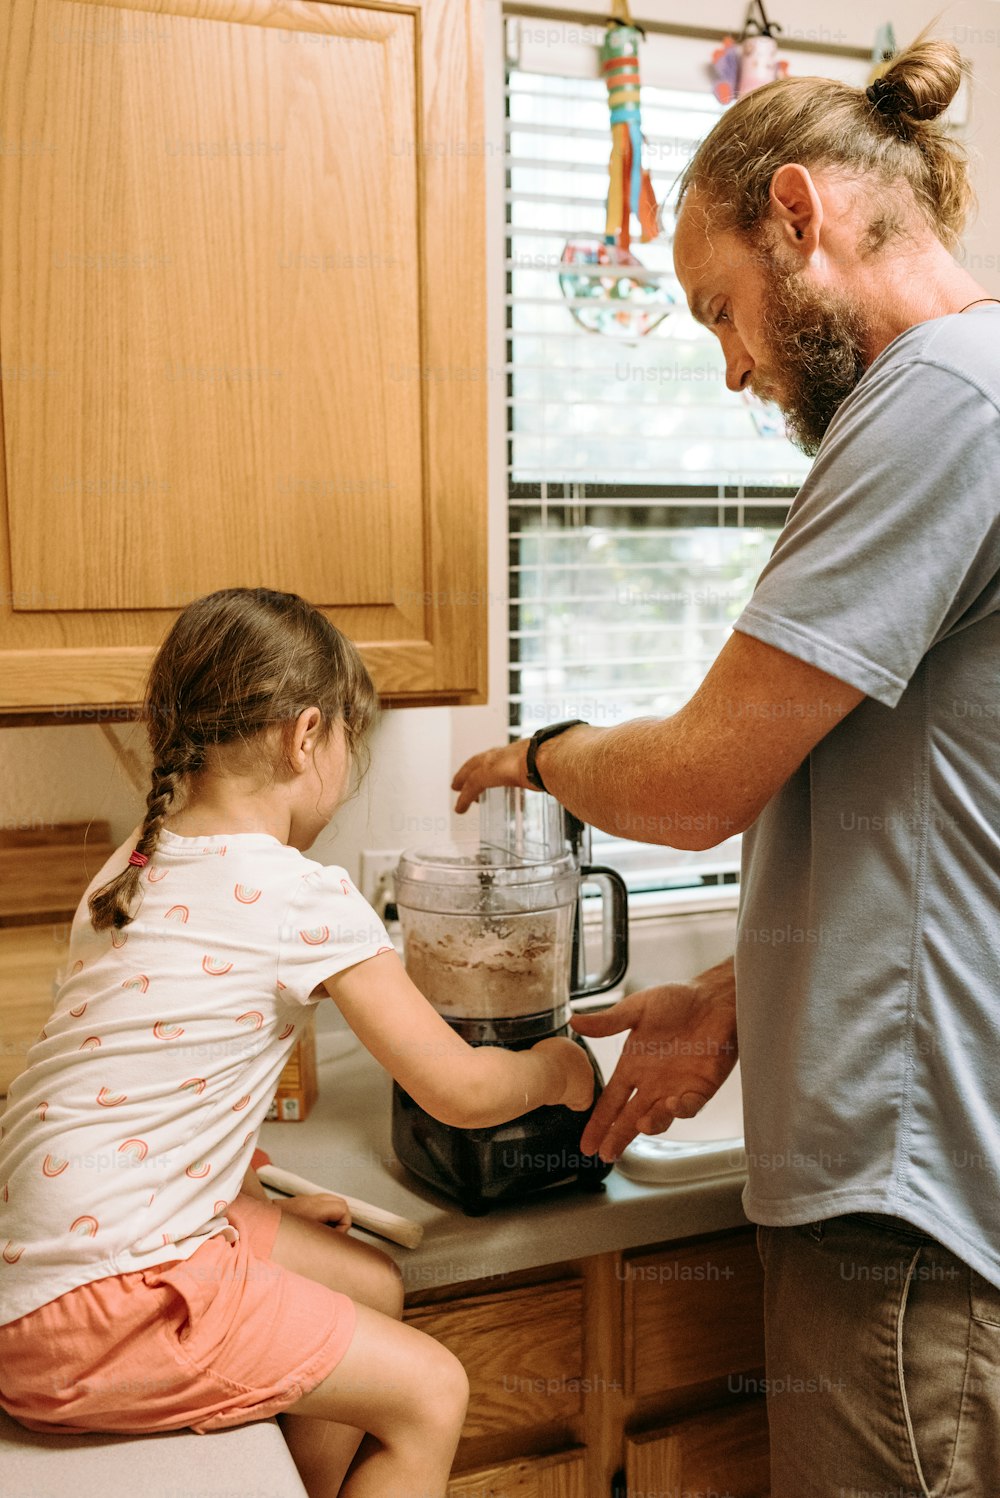 Un homme et une petite fille dans une cuisine